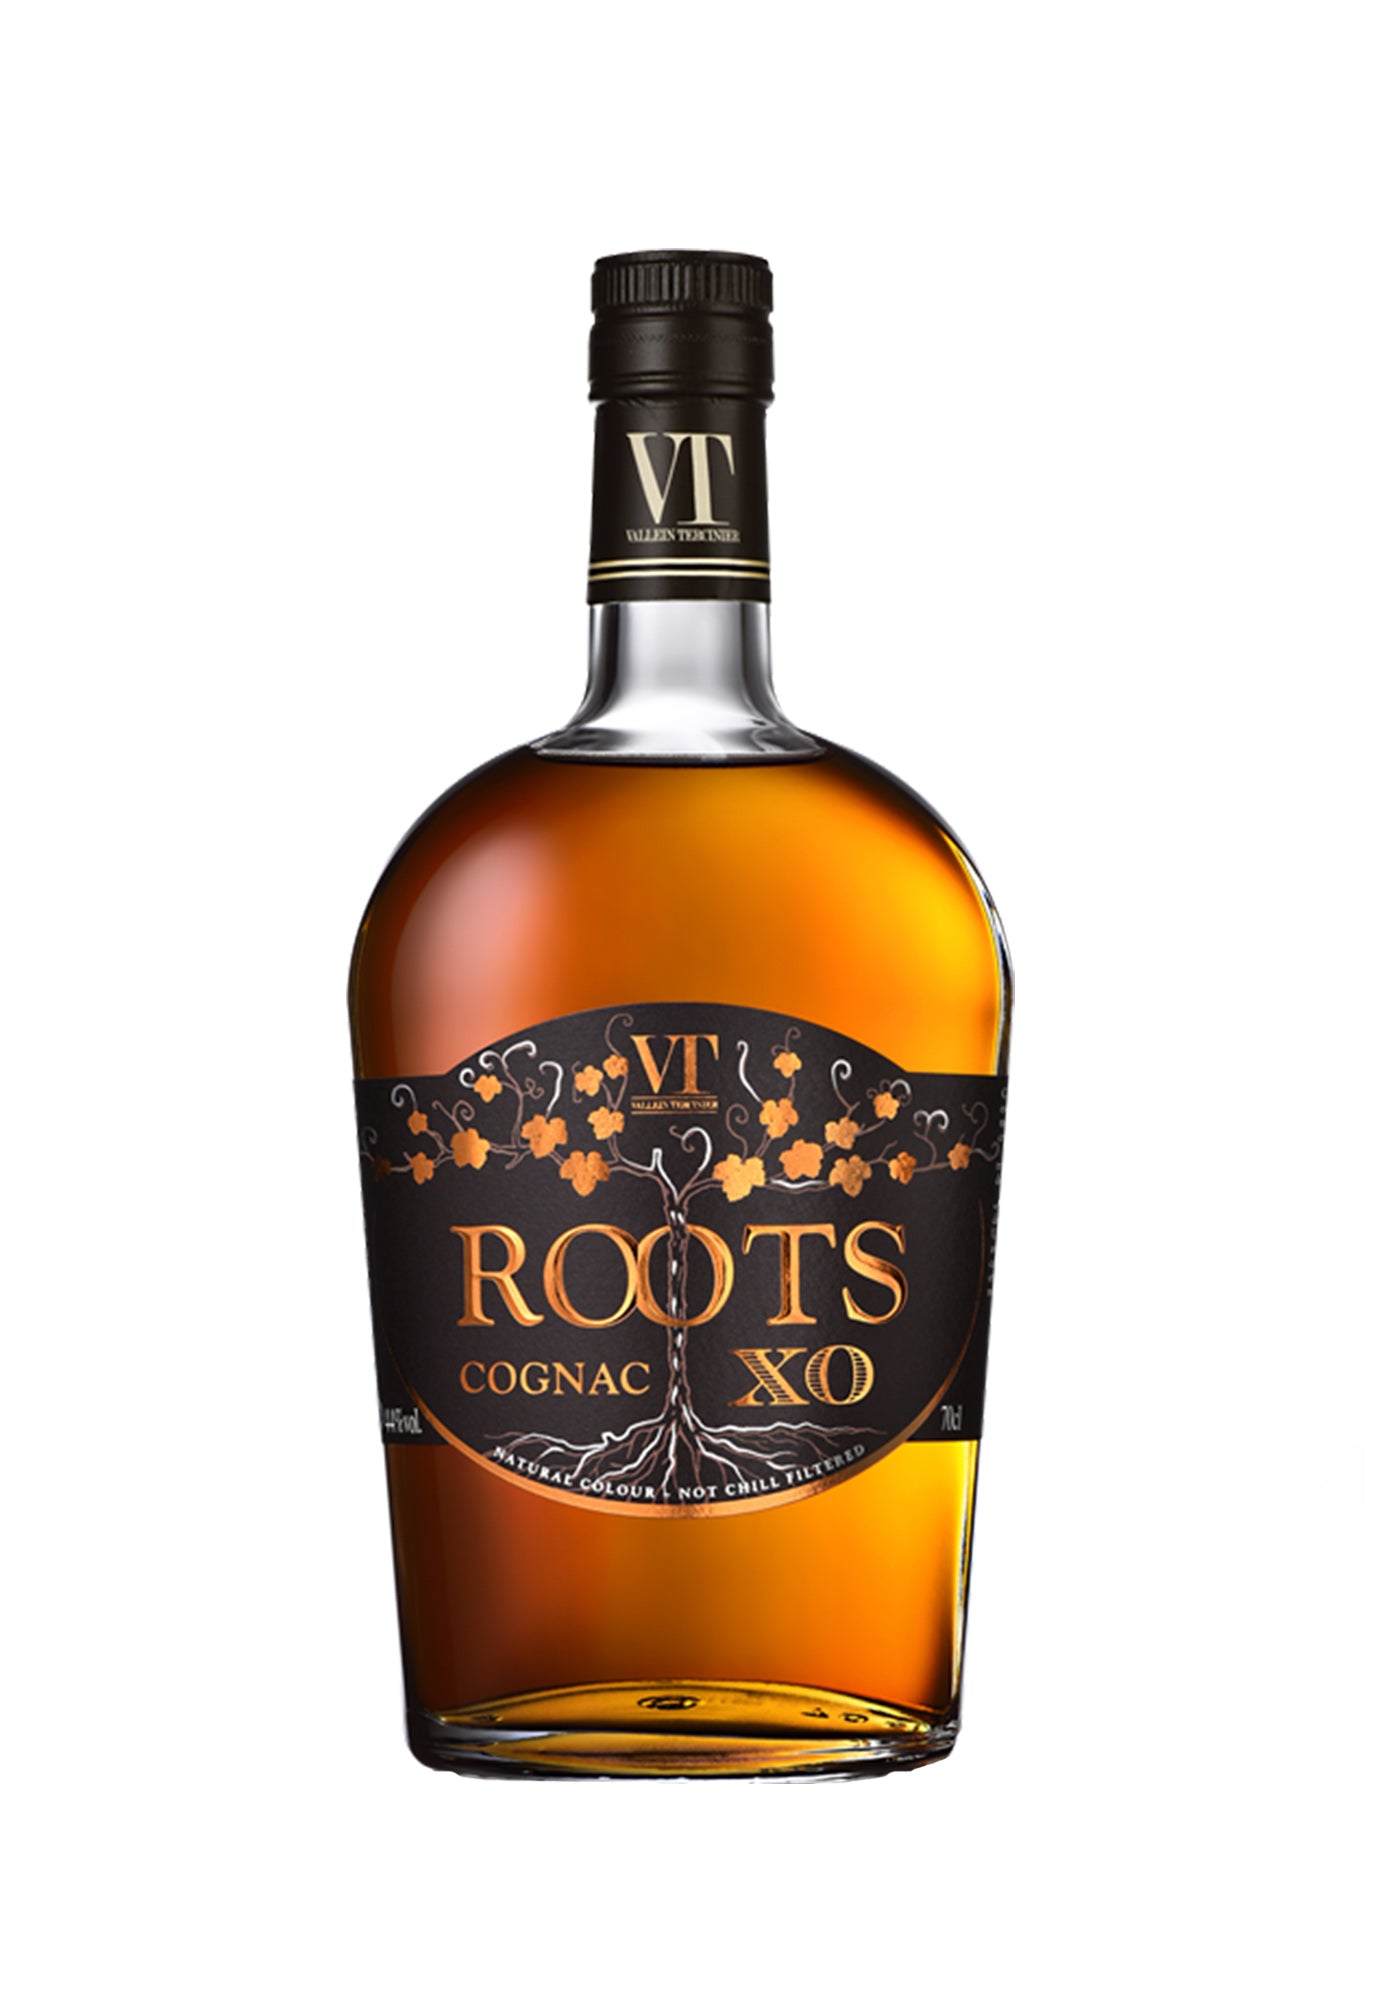 Vallein Tercinier Roots XO Cognac